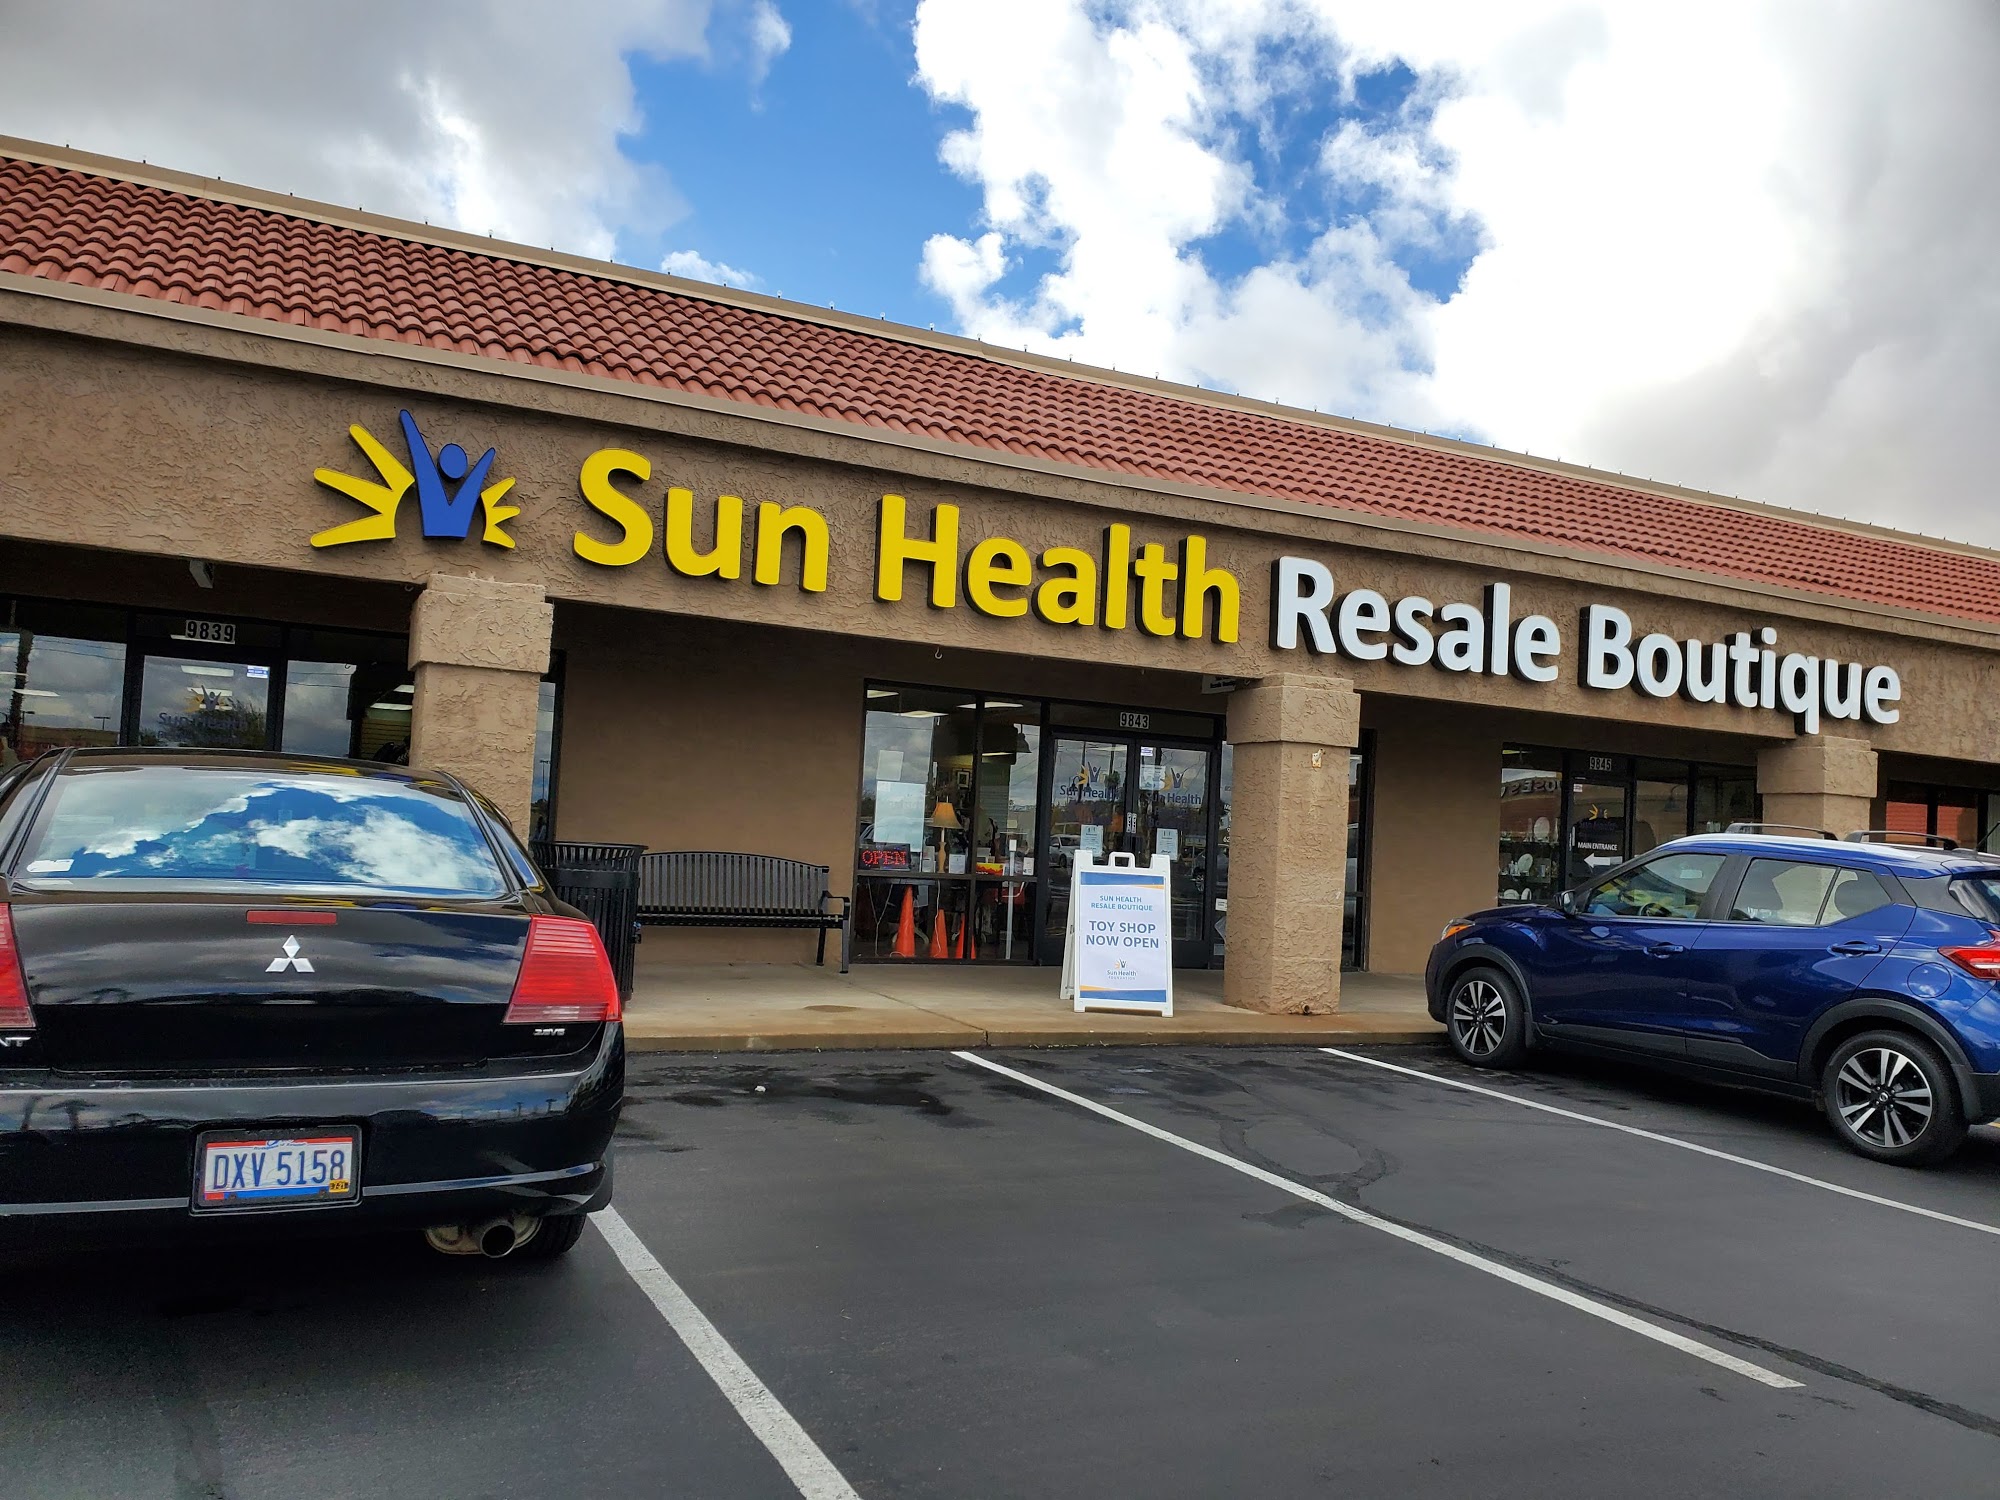 Sun Health Resale Boutique